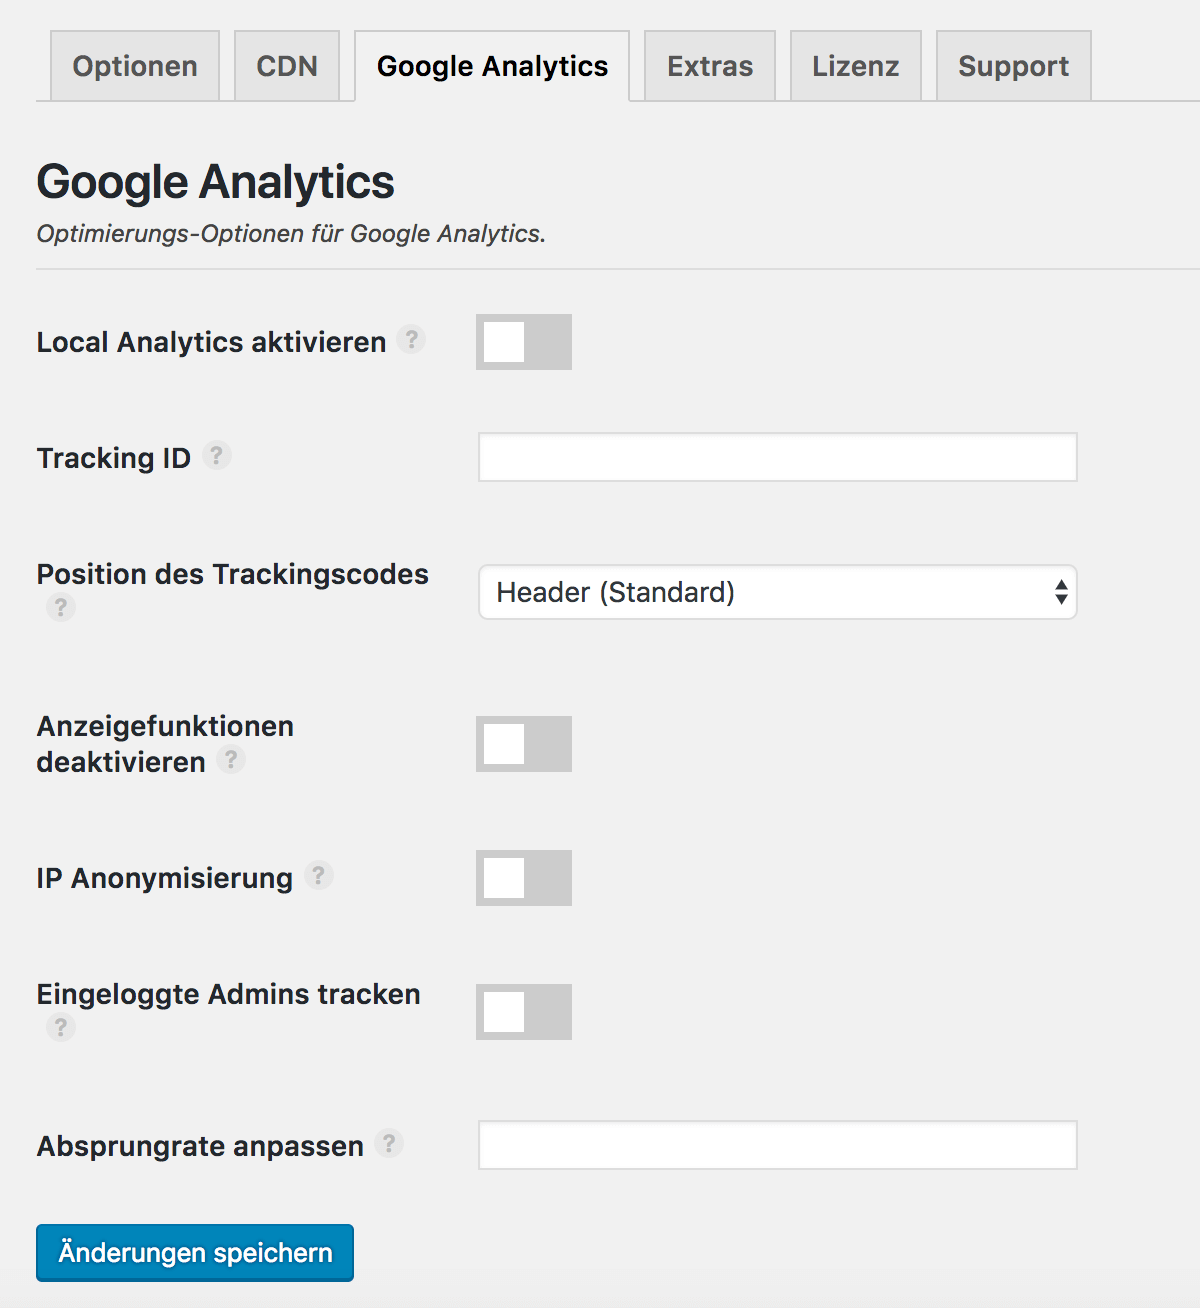 Die Perfmatters Google Analytics Optionen